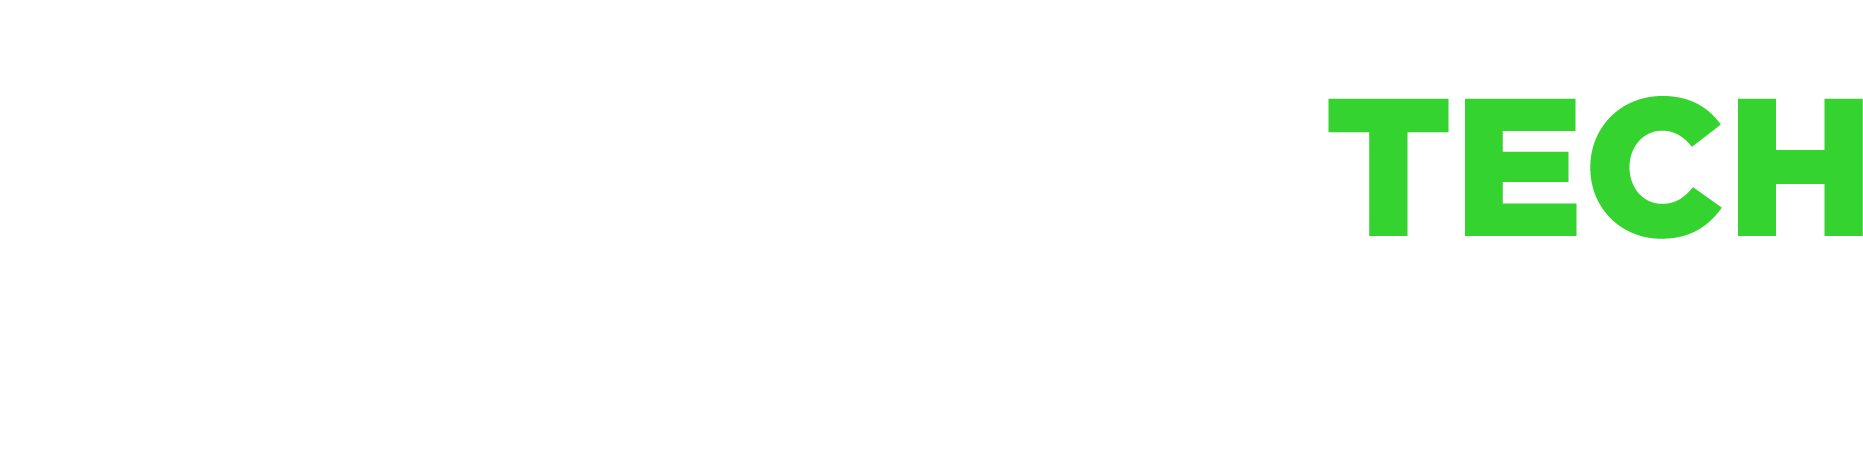 OceanTech_logo_NEG_hg